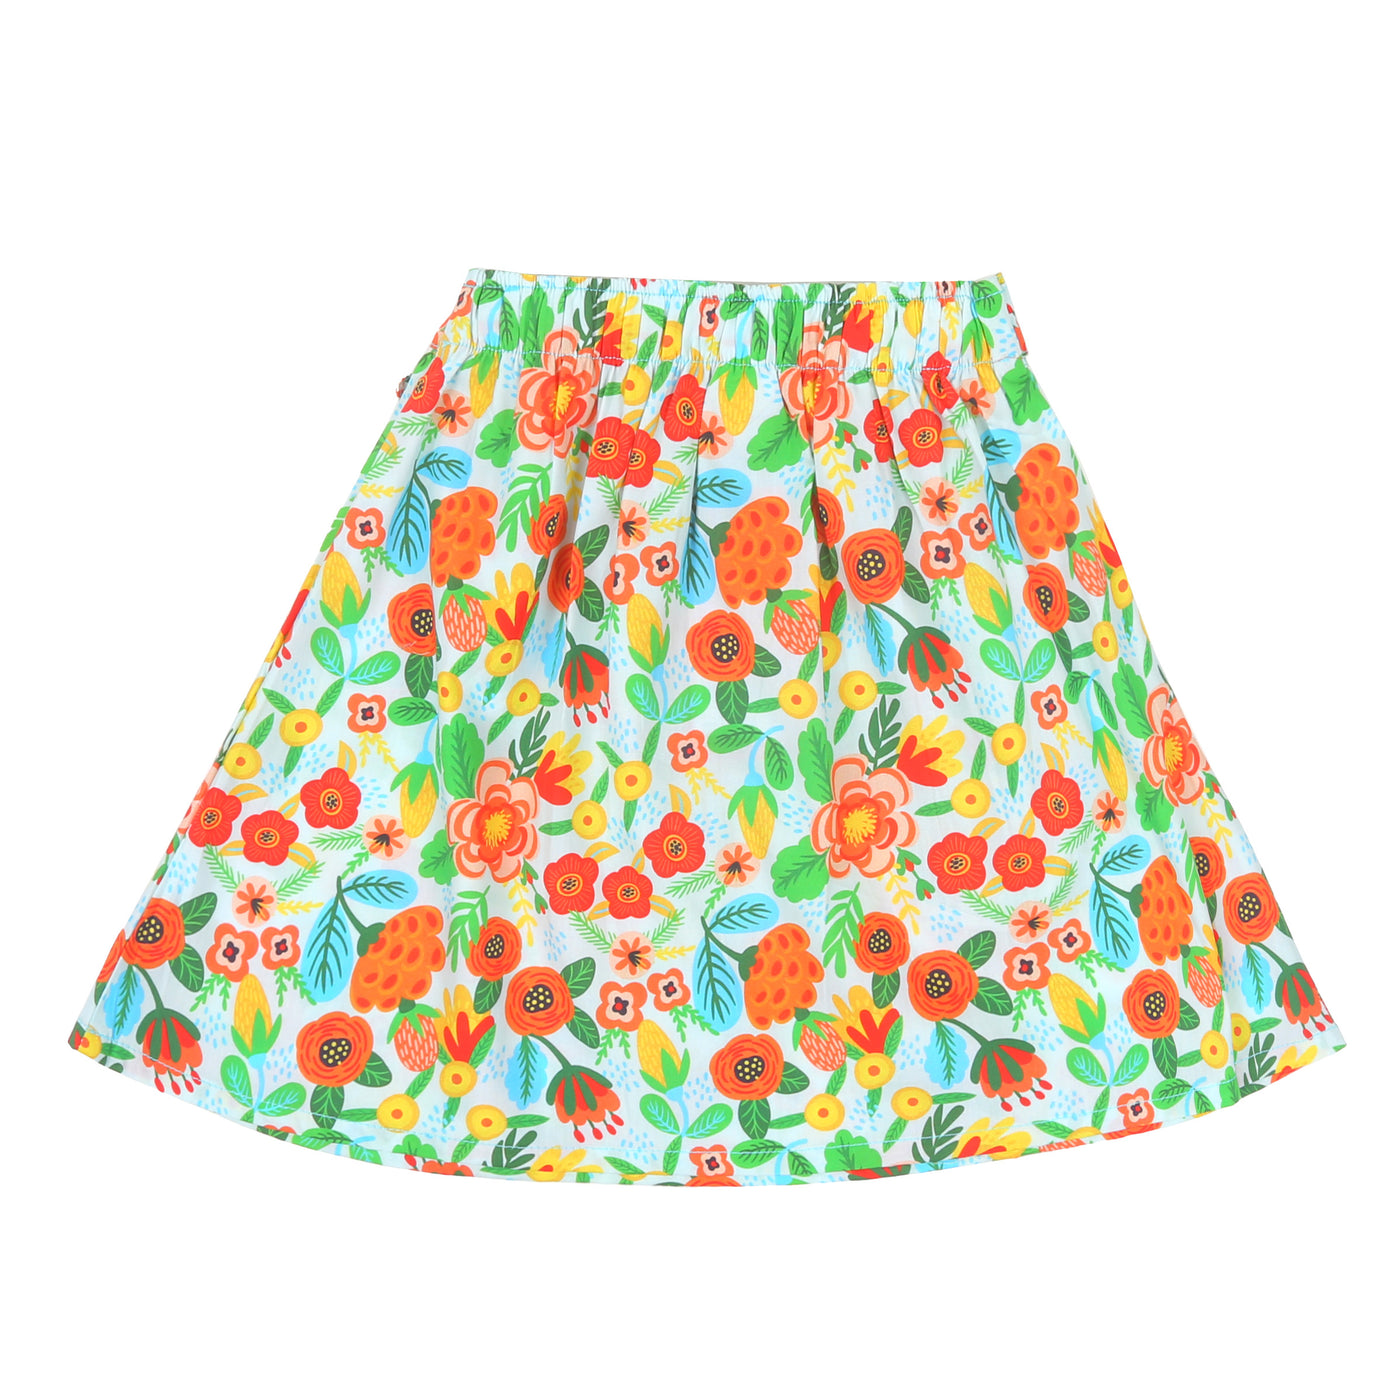 Girls Digital Print Short Skirt Flower - Multi